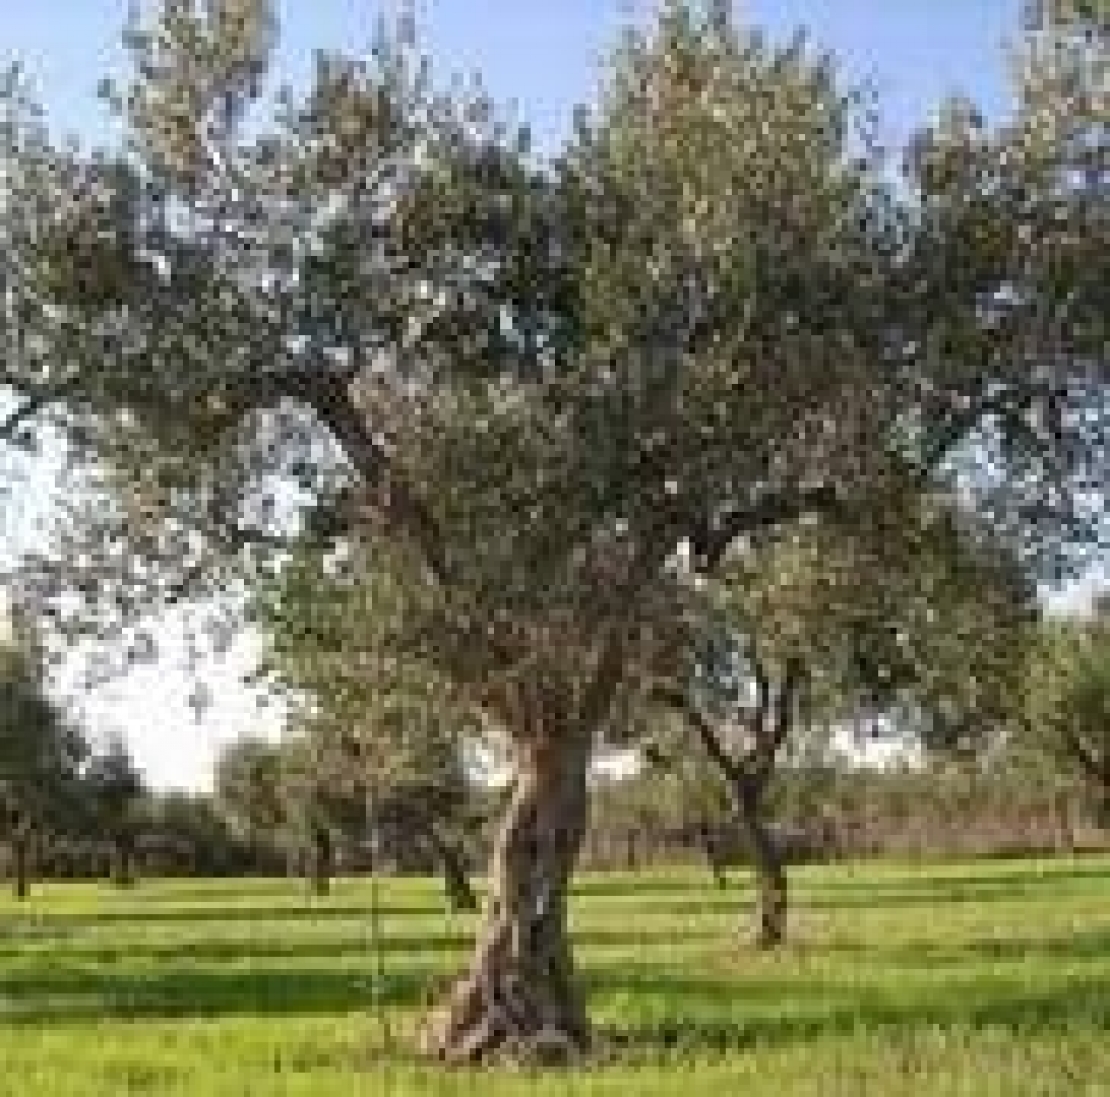 Il vaso policonico semplificato è il futuro dell'olivicoltura italiana